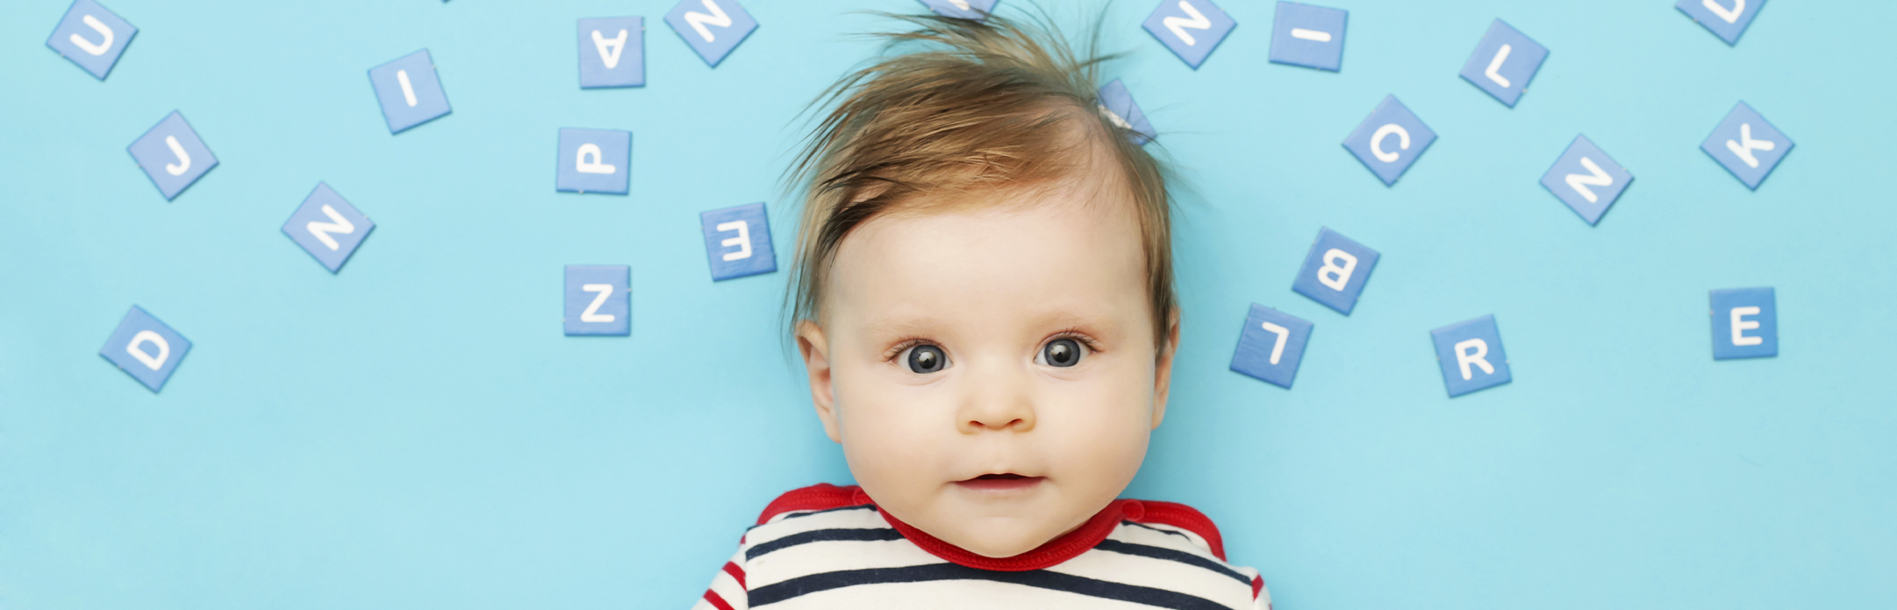 Como escolher o nome do bebê? 10 dicas infalíveis